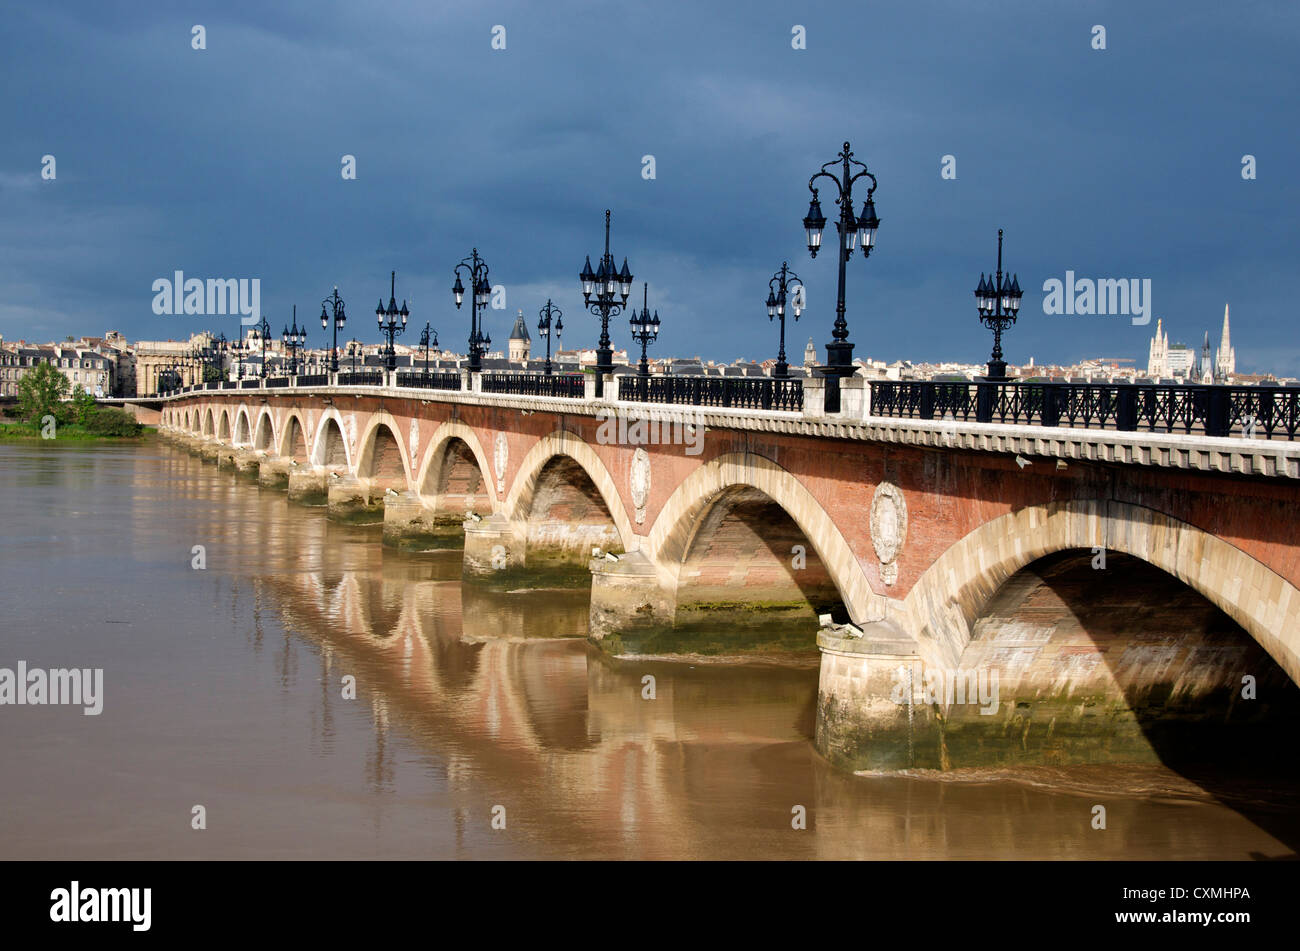 The Pont de Pierre bridge crossing the river Garonne, Bordeaux, France in the city centre Stock Photo